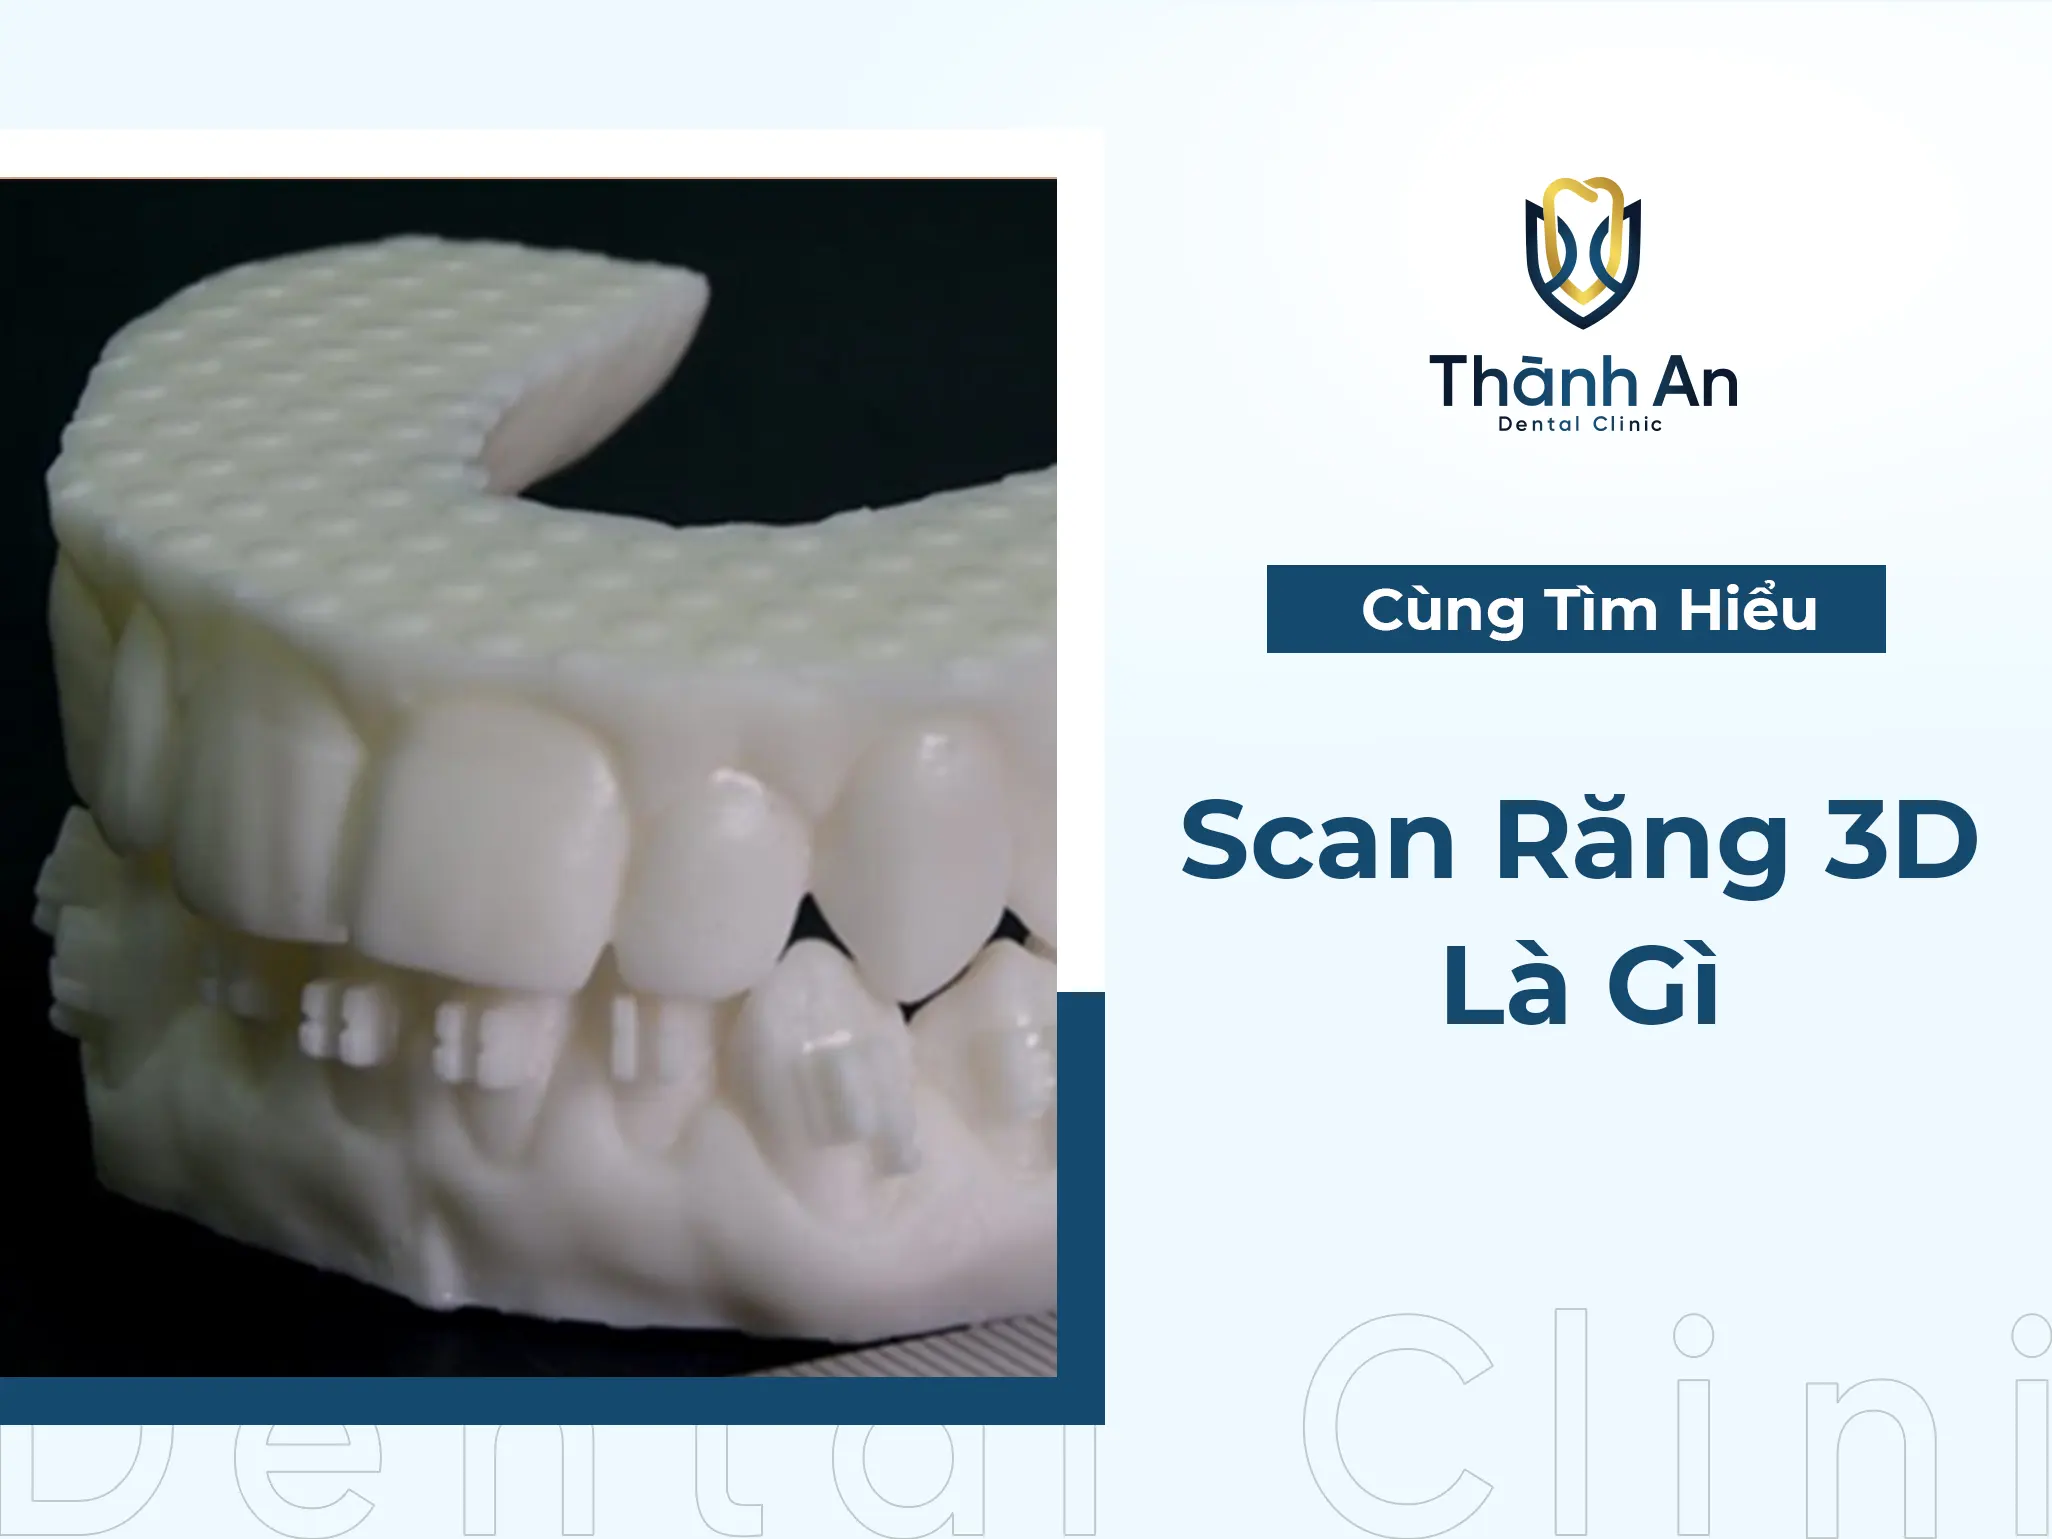 #1 Scan Răng 3D Là Gì? - Công Nghệ Đột Phá Mới Hiện Nay